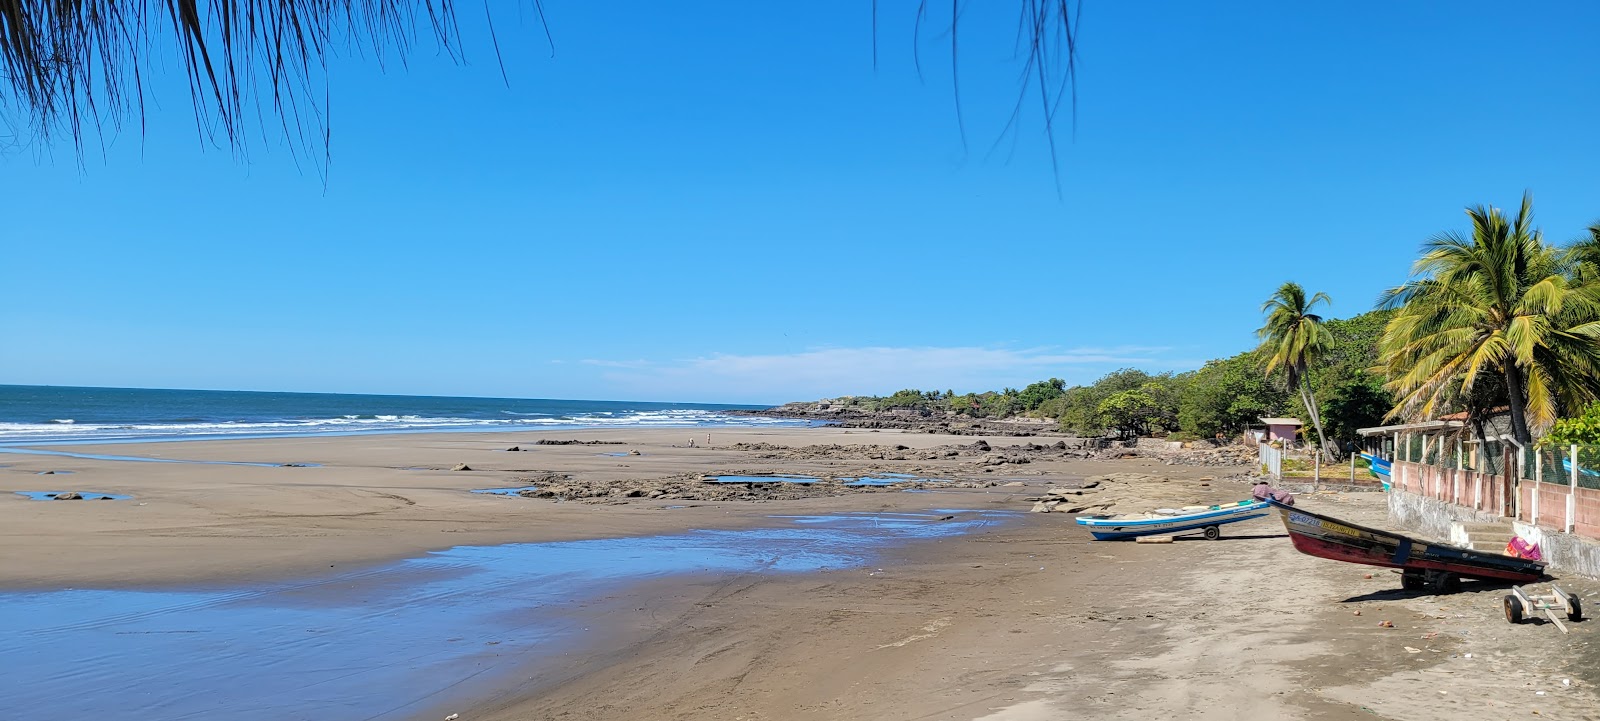 Negras beach'in fotoğrafı gri kum yüzey ile